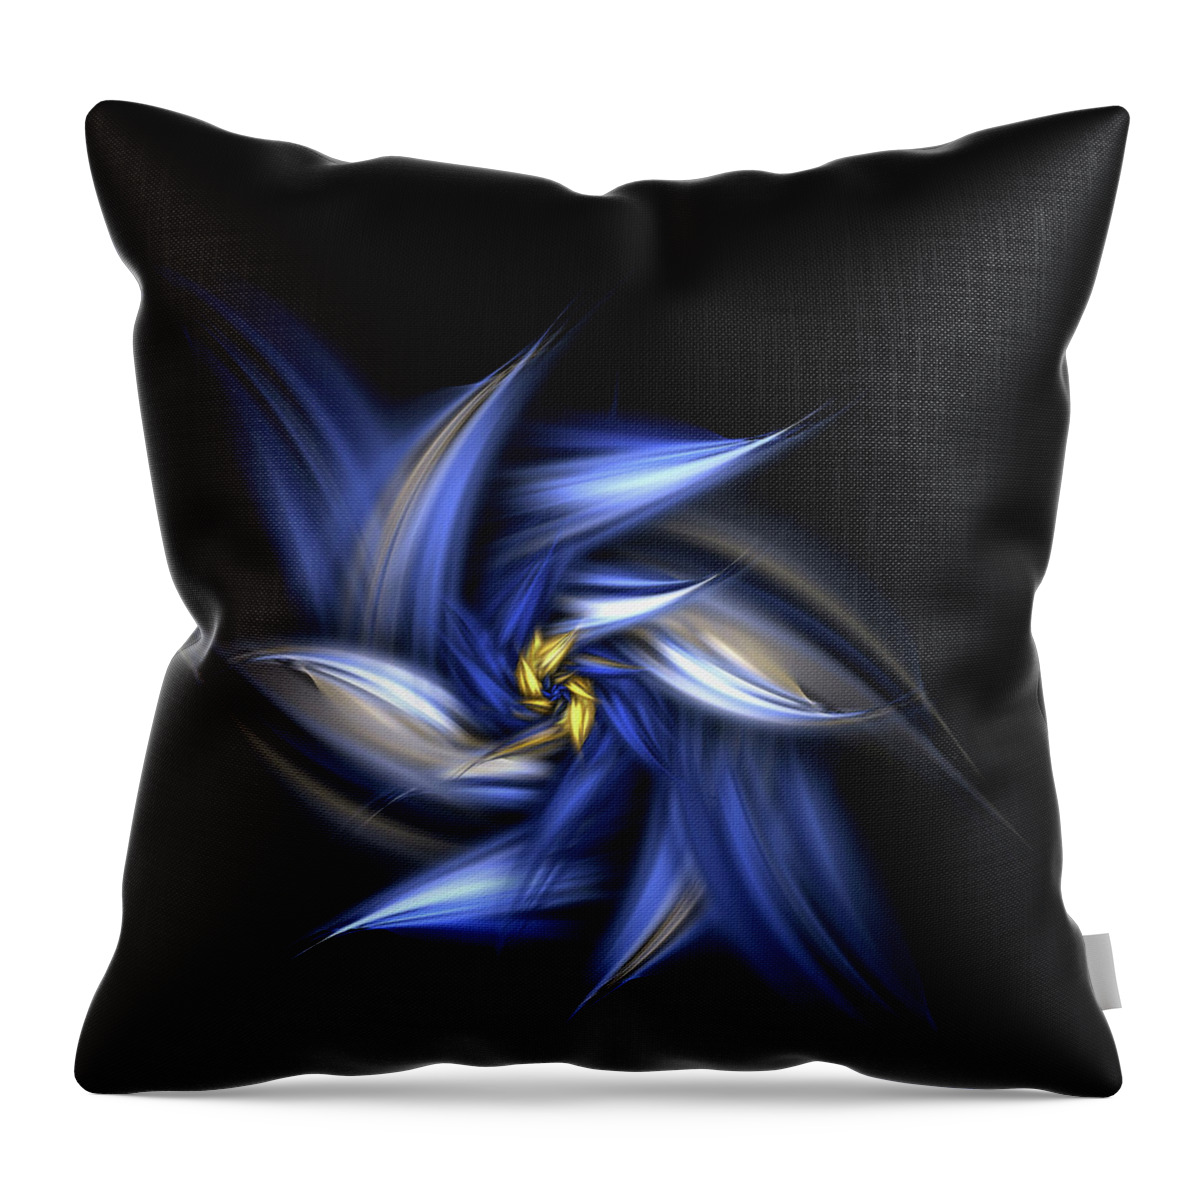 Fractal Throw Pillow featuring the digital art Blue Daisy by Brandi Untz